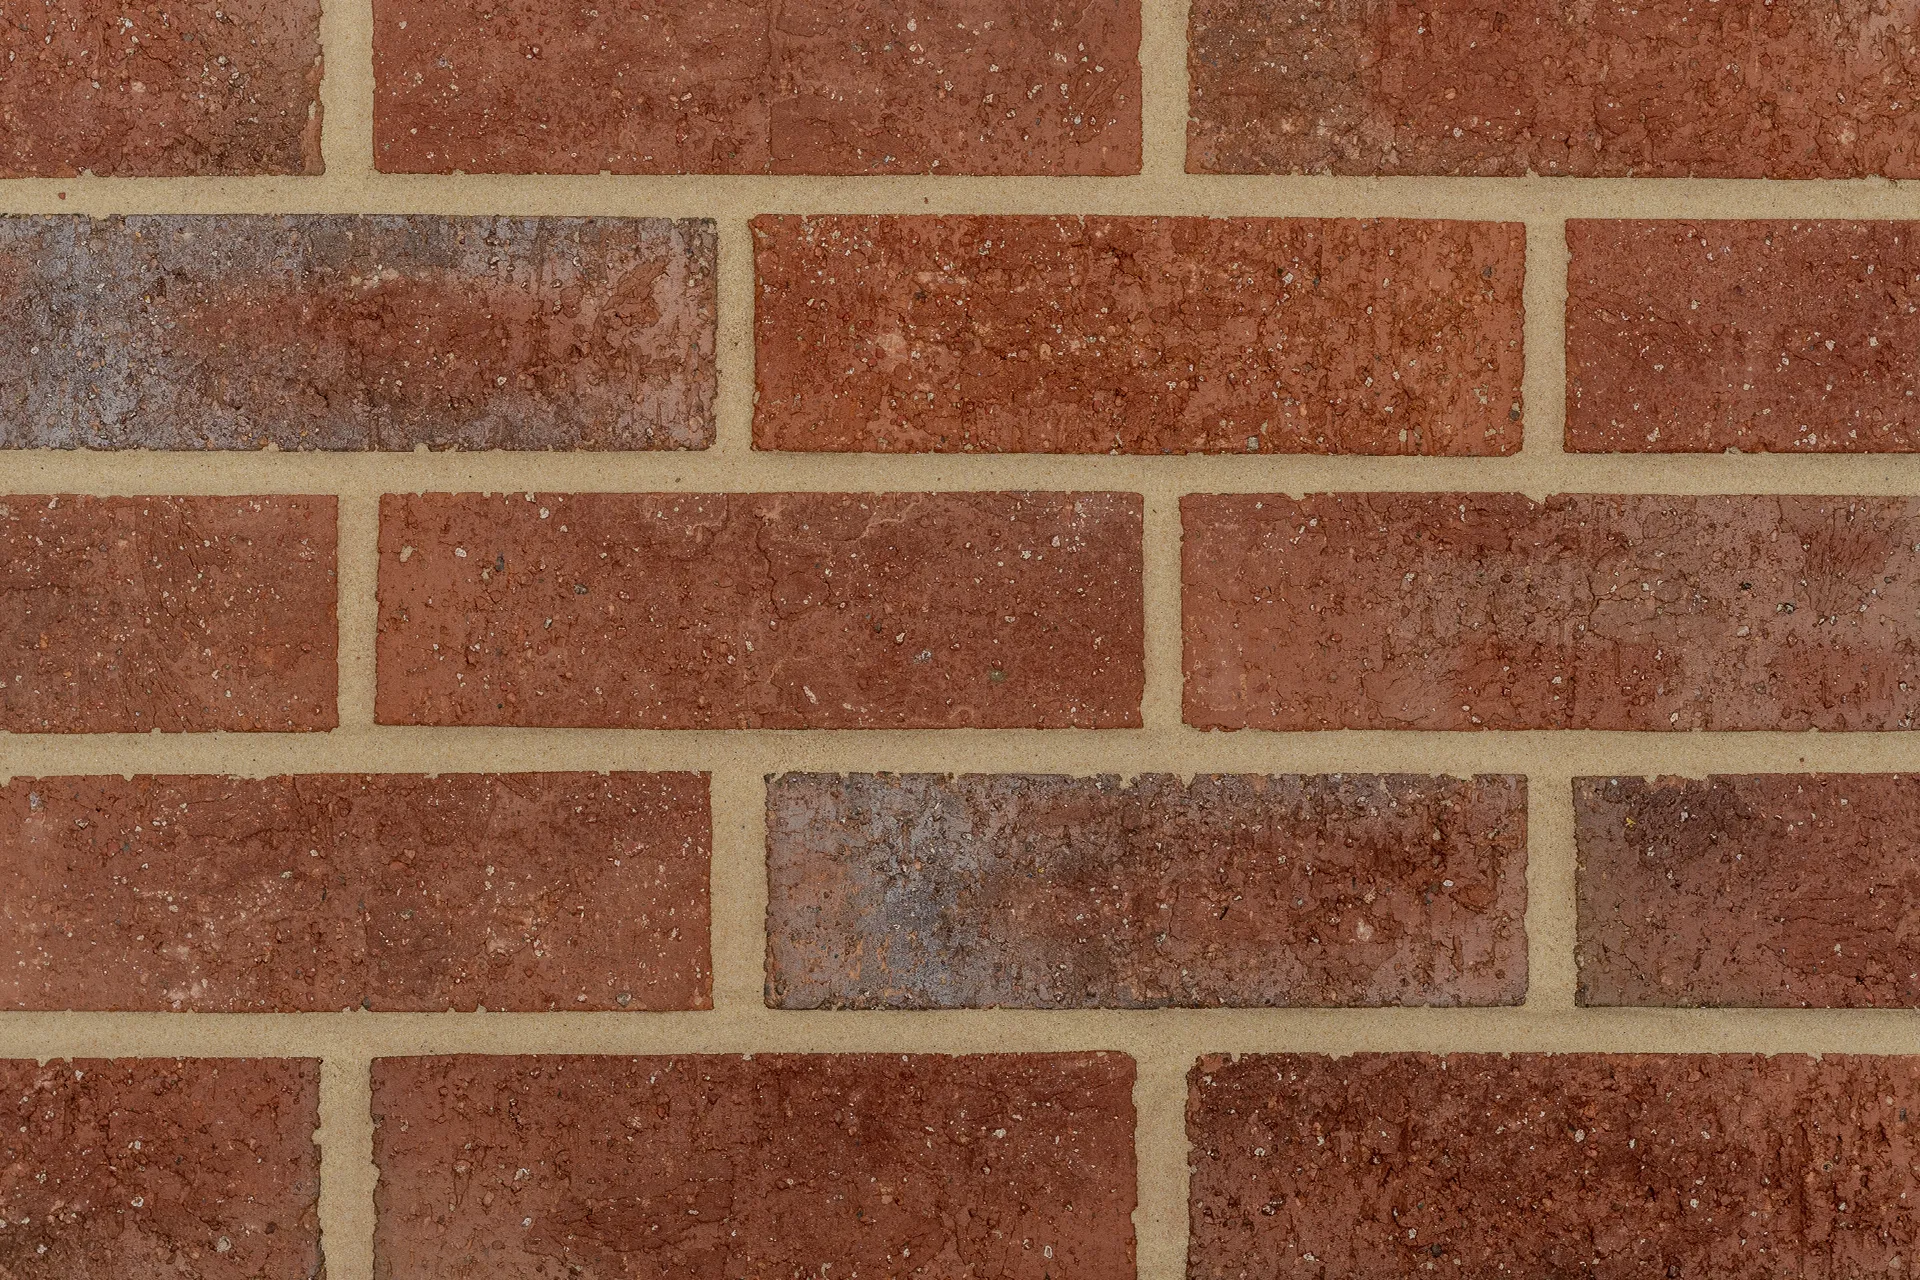 Calderwood Claret bricks